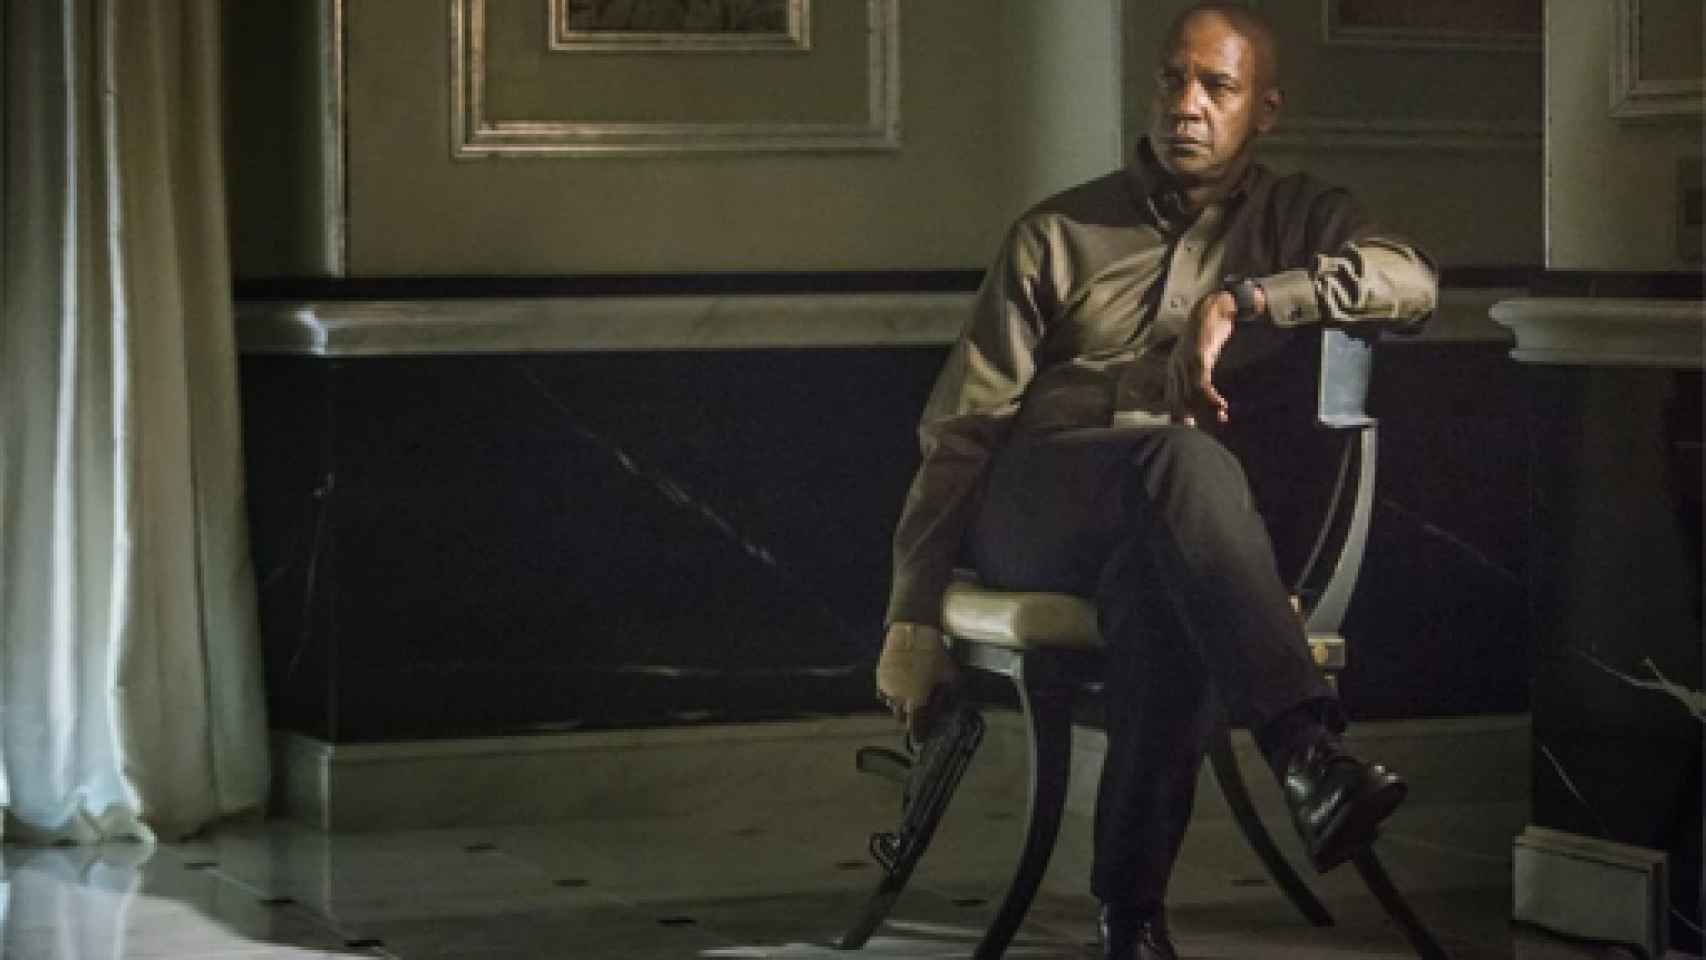 Image: Un vibrante thriller con Denzel Washington inaugura el Festival de San Sebastián